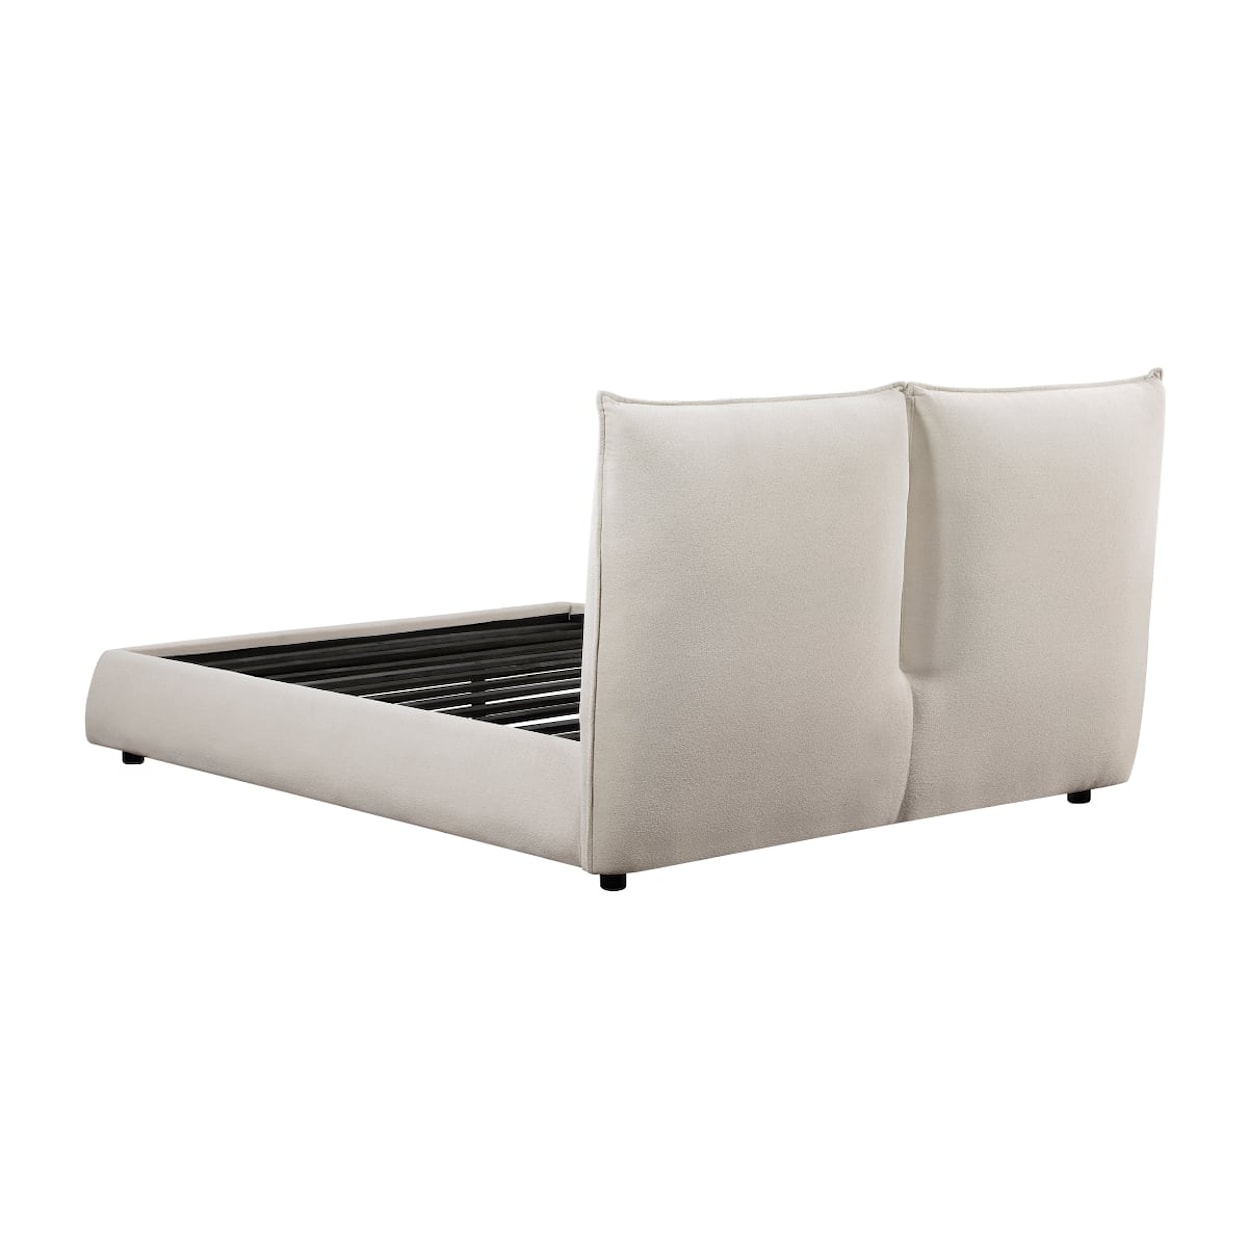 Homelegance Furniture Linna Full Platform Bed